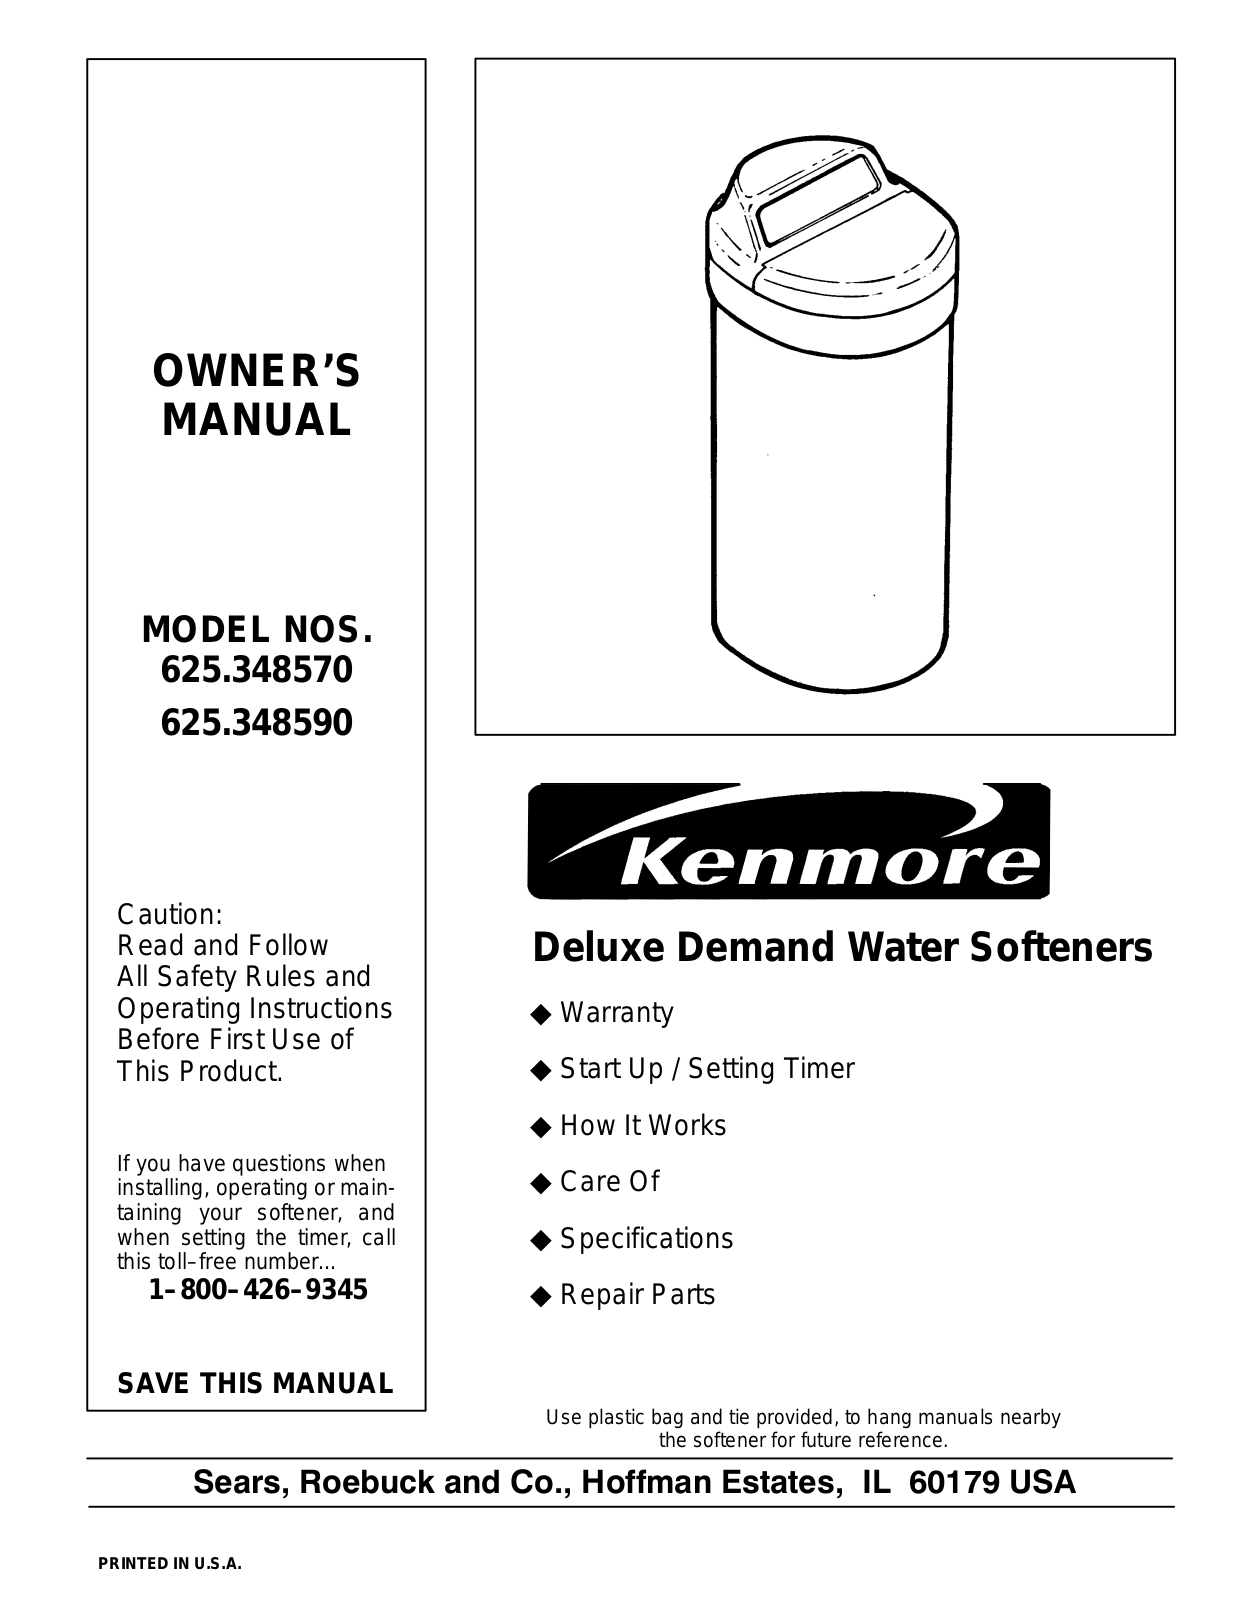 Kenmore 625.34859, 625.34857 User Manual 2